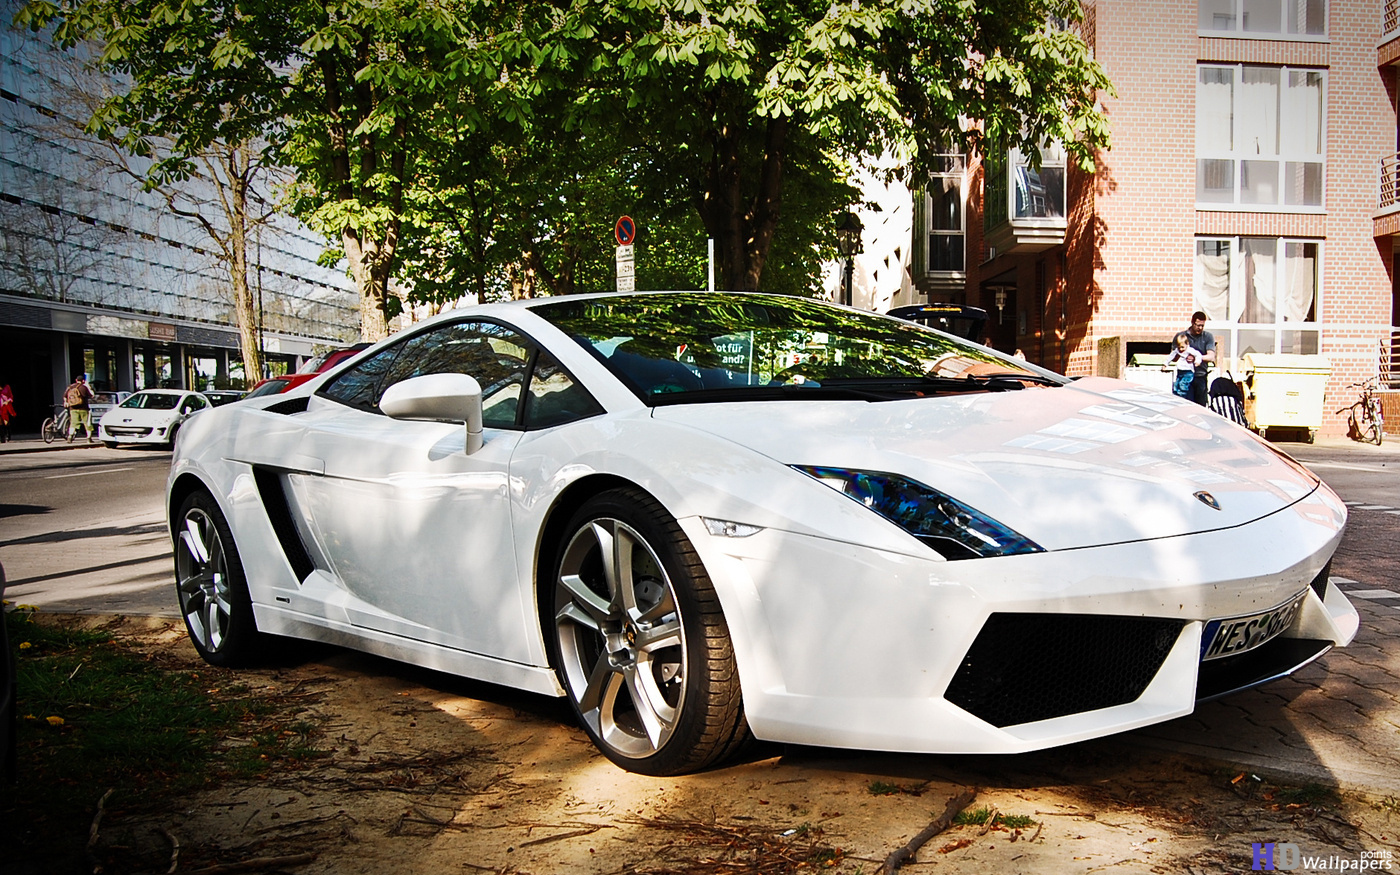 Lamborghini Car images Download HD Wallpaper 1400x875